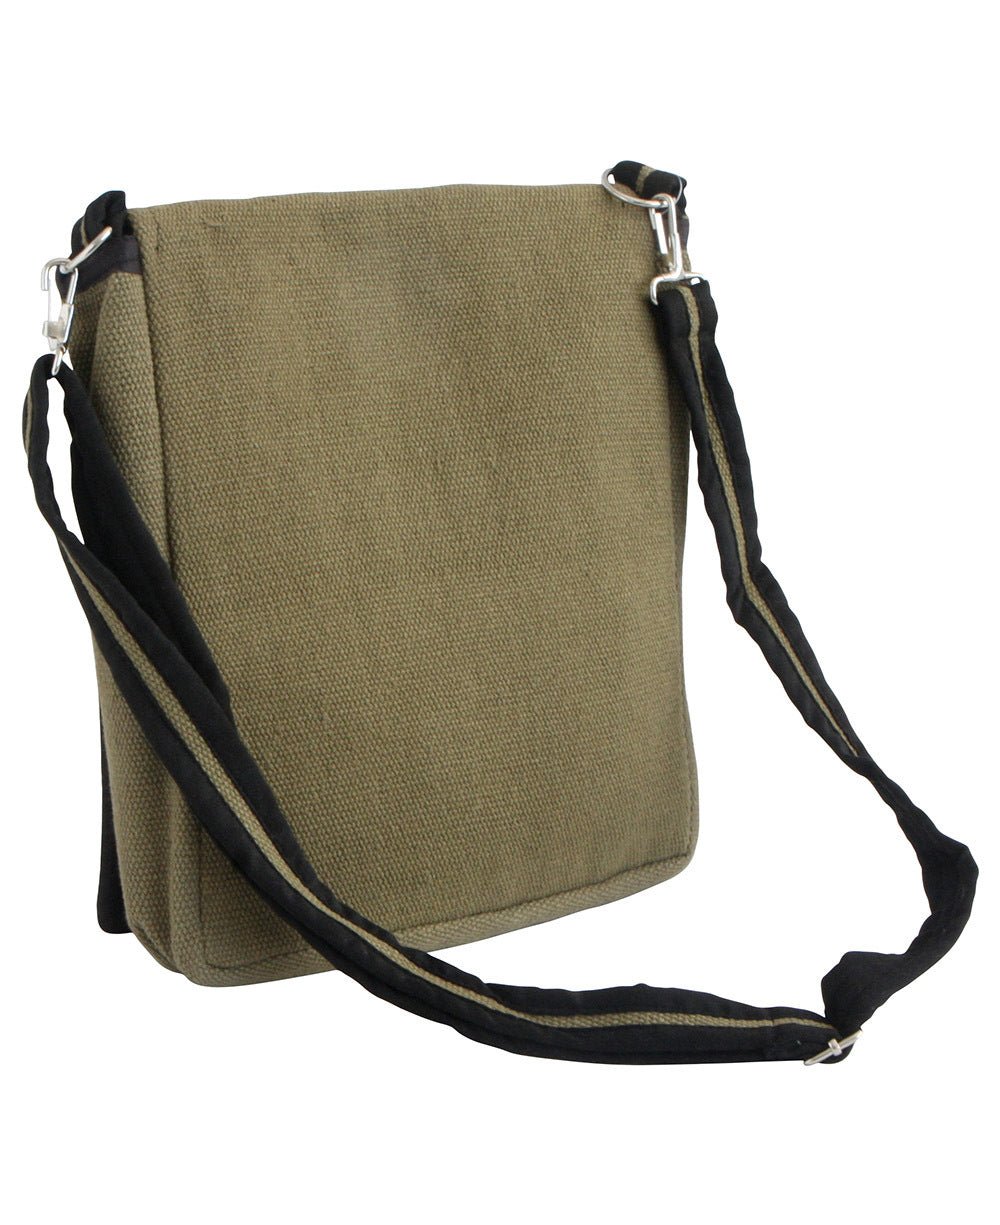 Om Messenger Cross Body Bag - Handbags Green